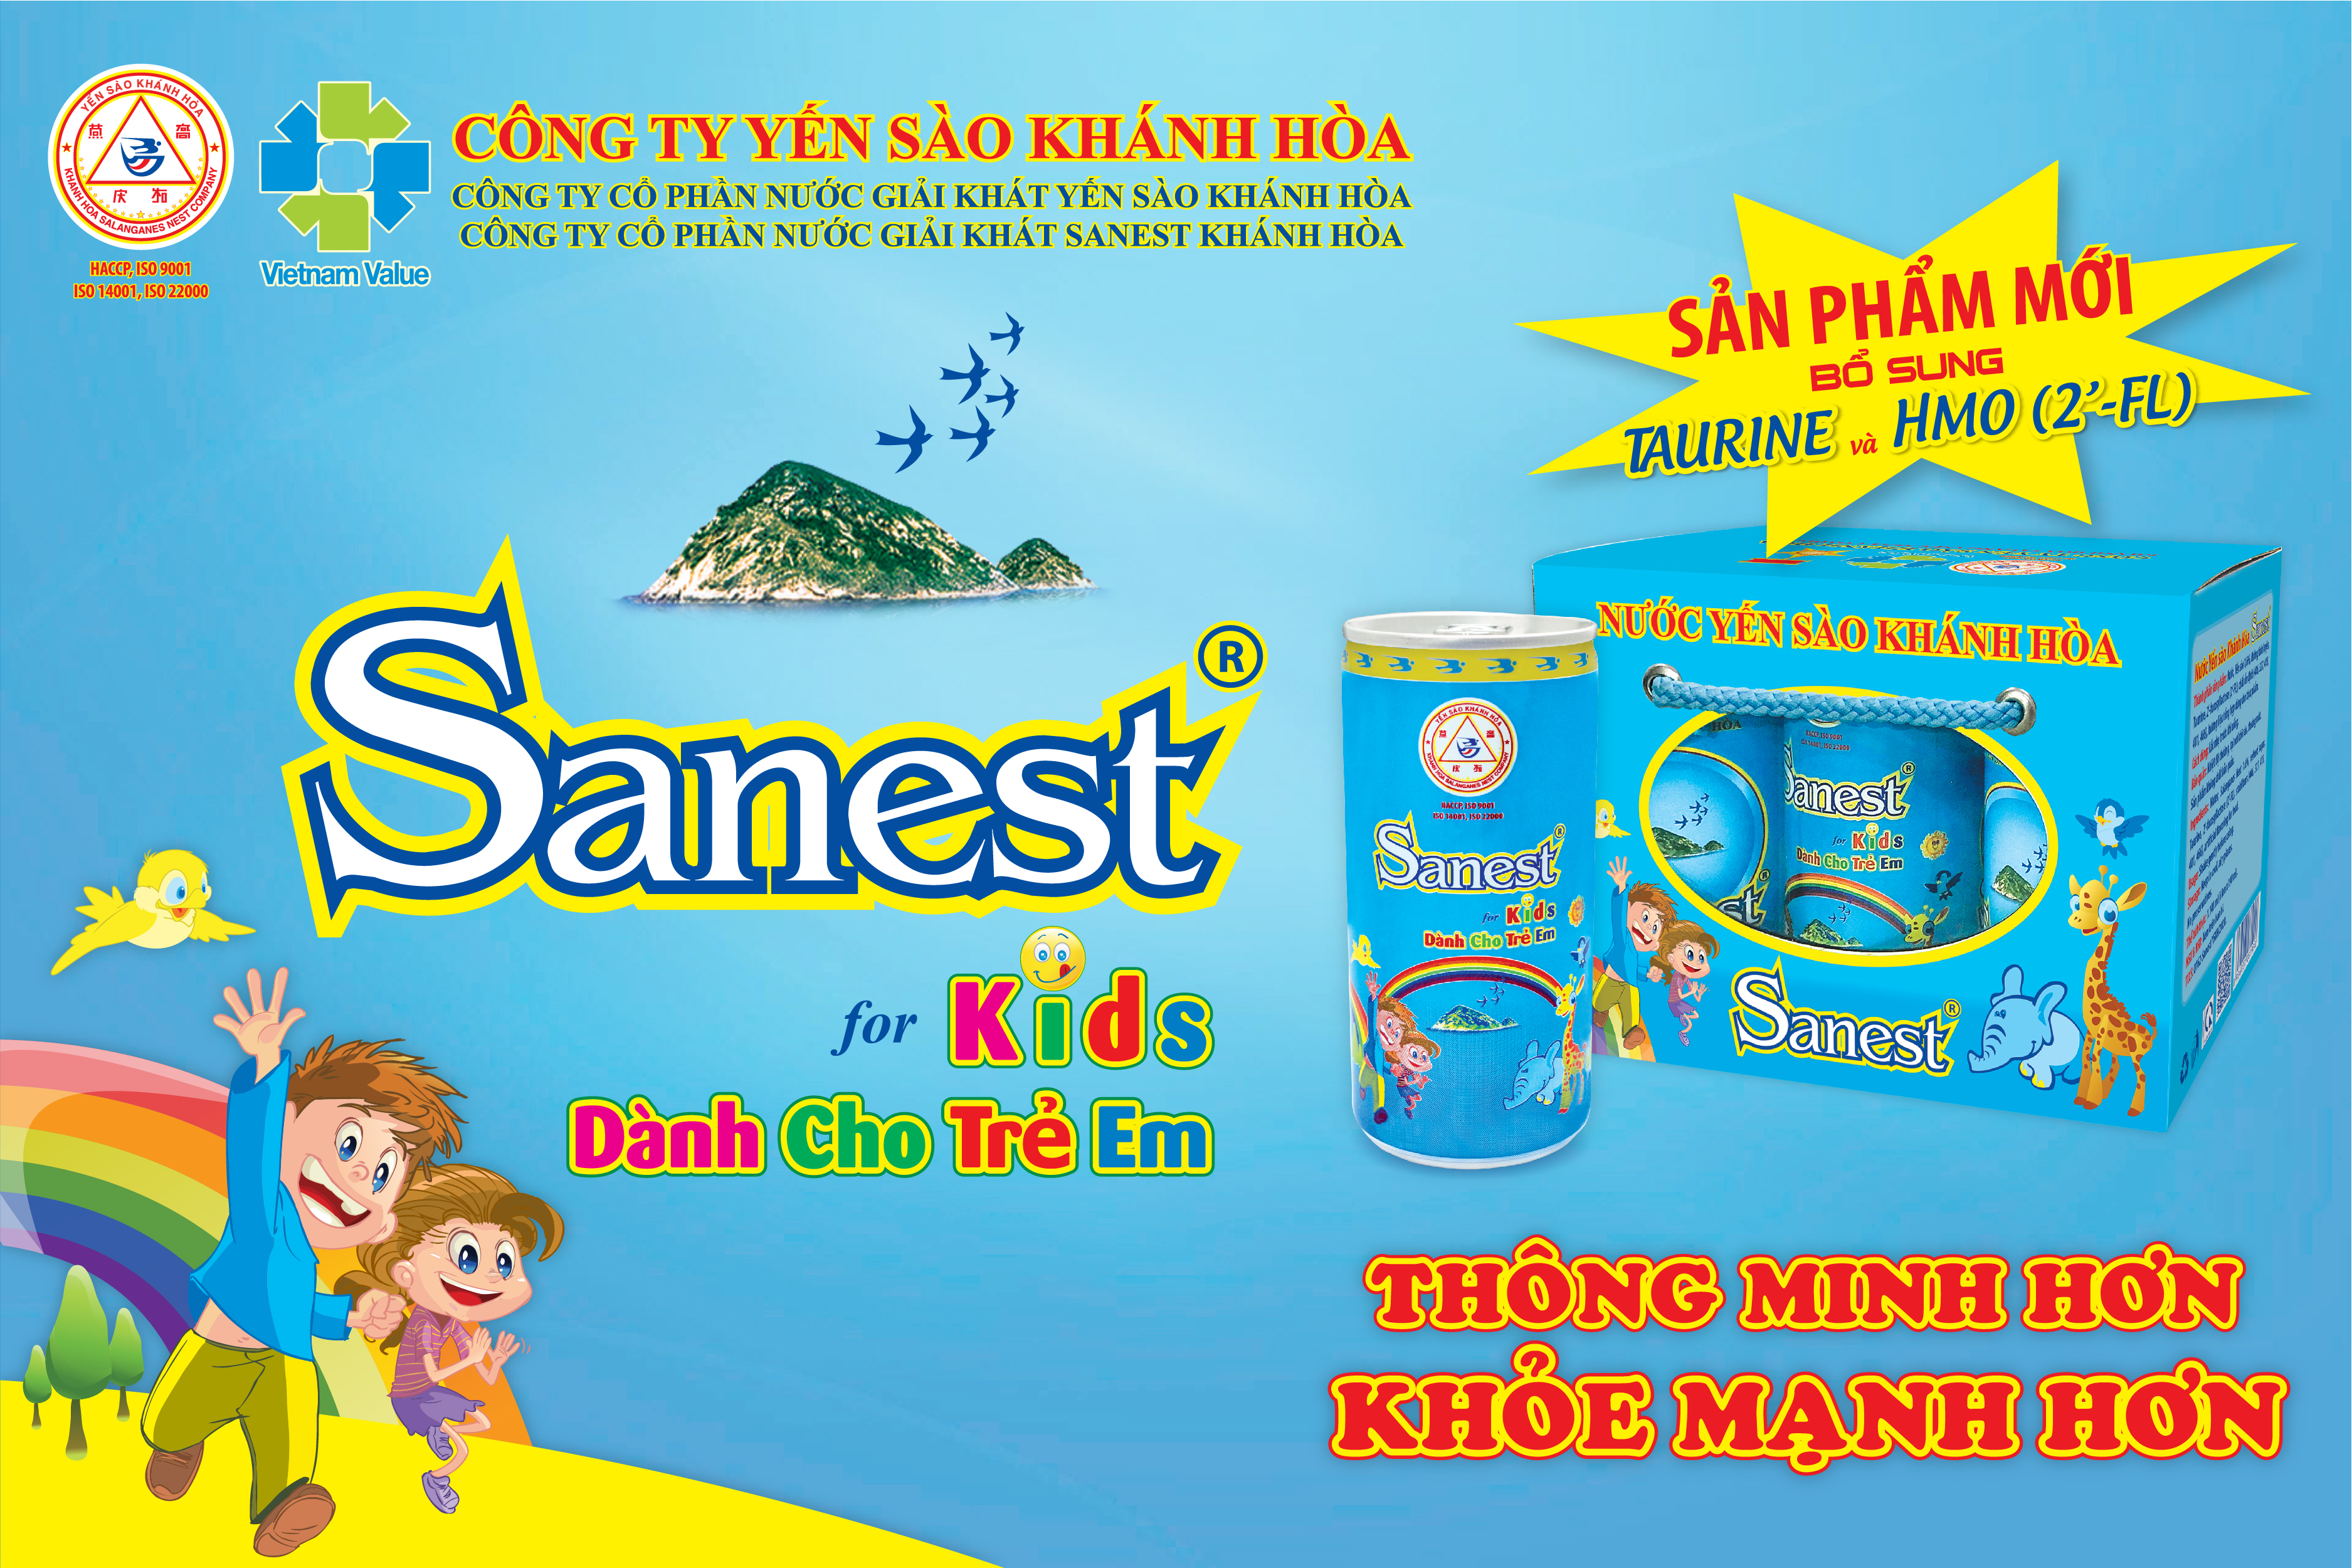 Nước Yến sào Khánh Hòa Sanest dành cho trẻ em đóng lon - Sản phẩm Vàng cho trẻ em